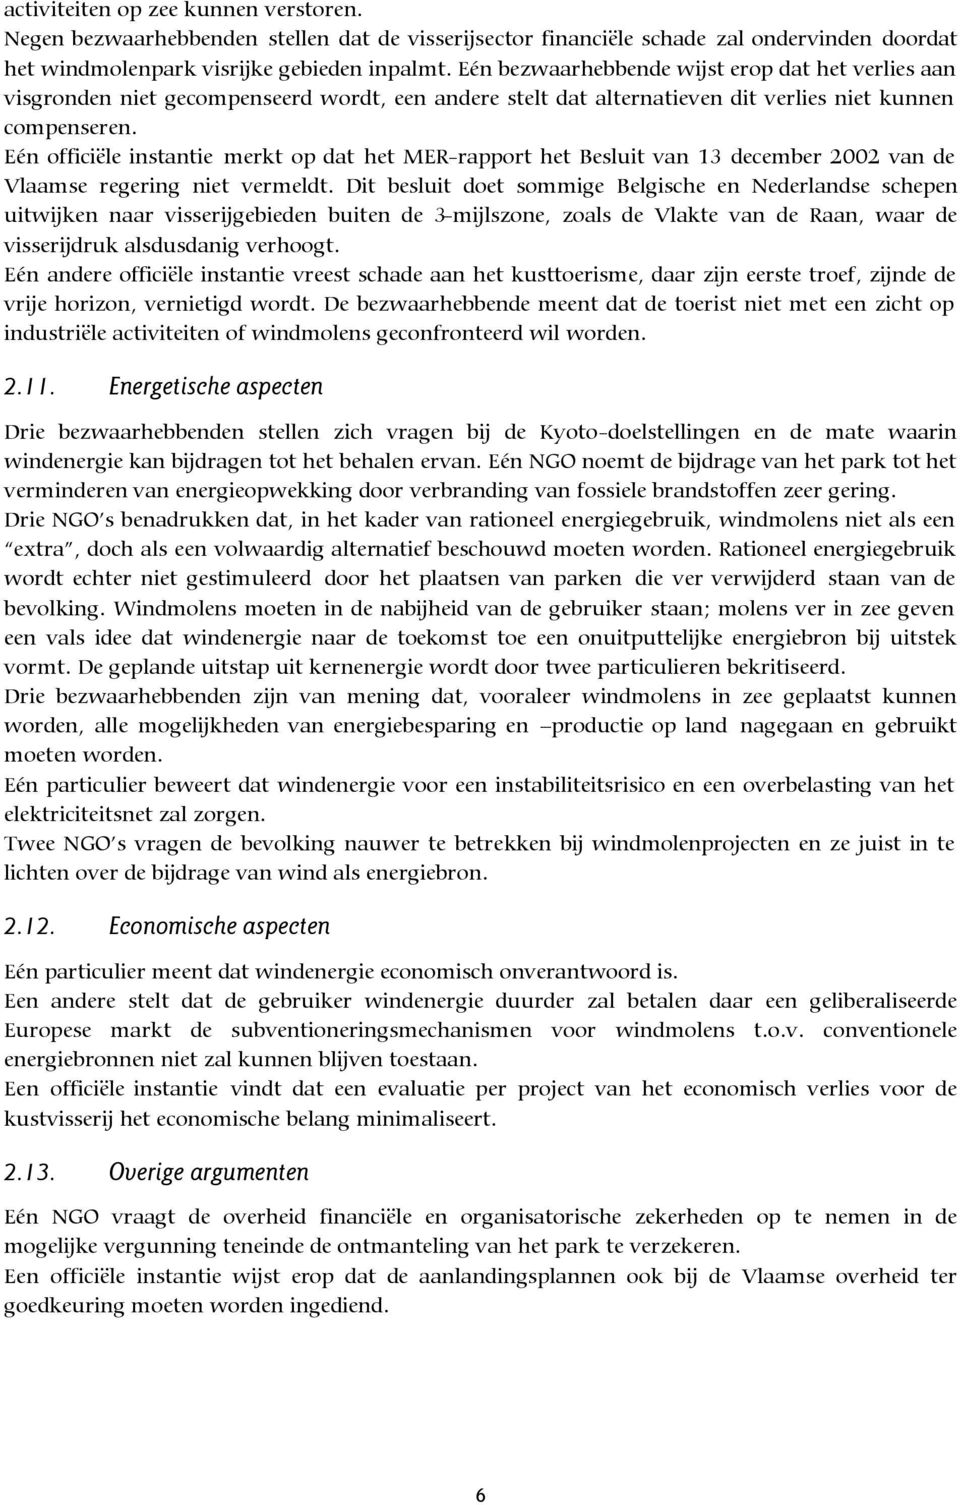 Eén officiële instantie merkt op dat het MER-rapport het Besluit van 13 december 2002 van de Vlaamse regering niet vermeldt.